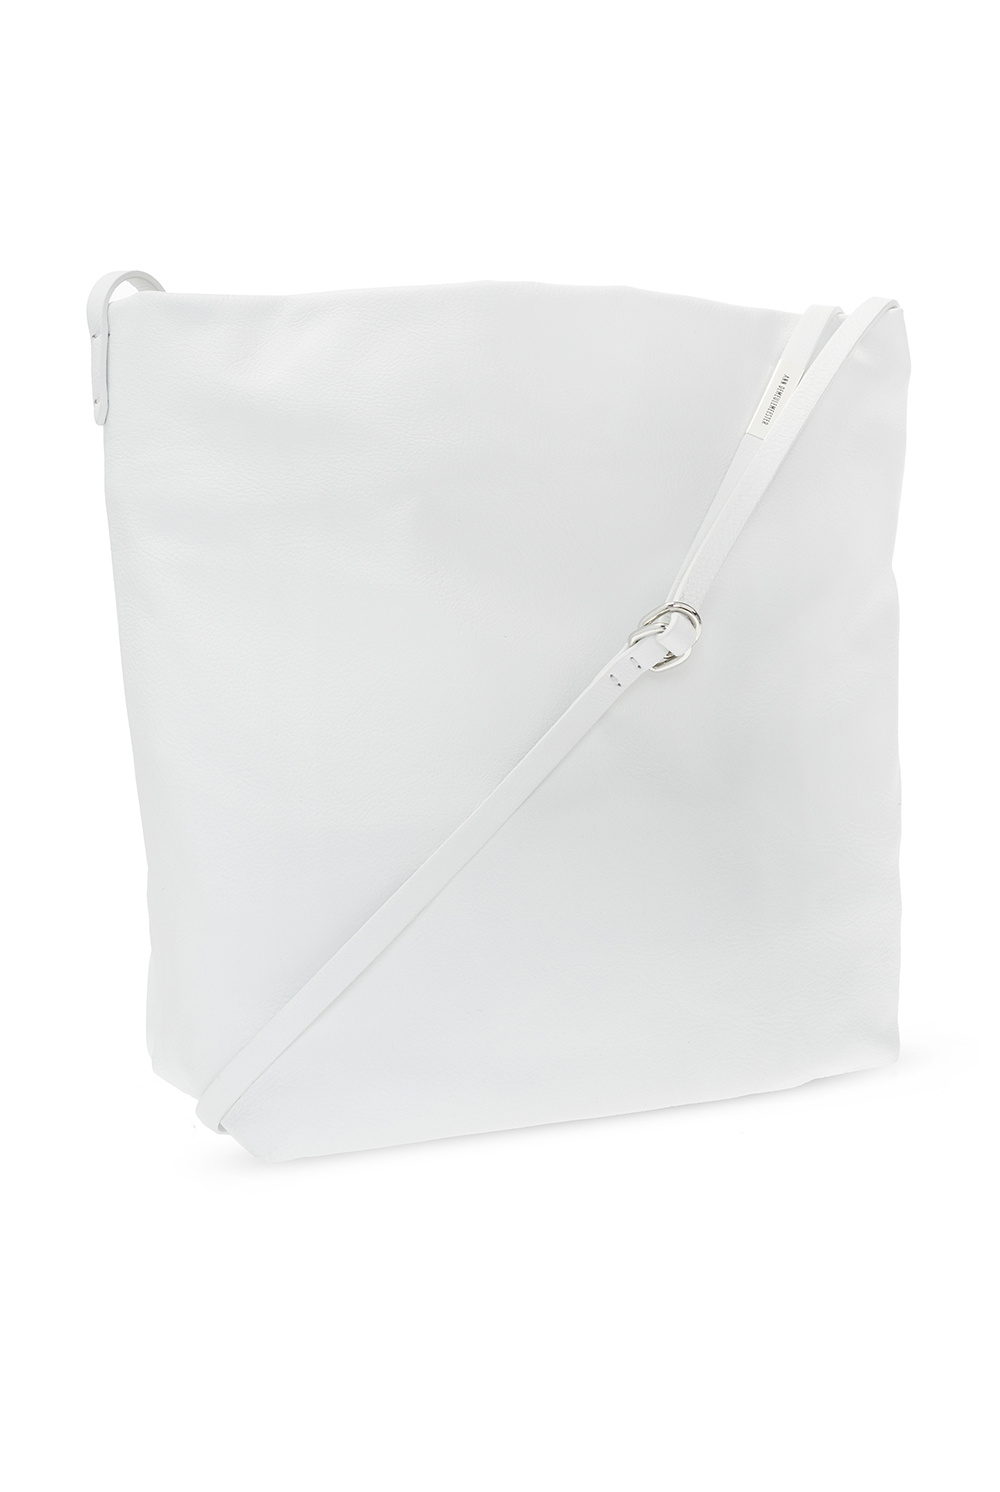 Ann Demeulemeester ‘June Small’ shoulder white bag